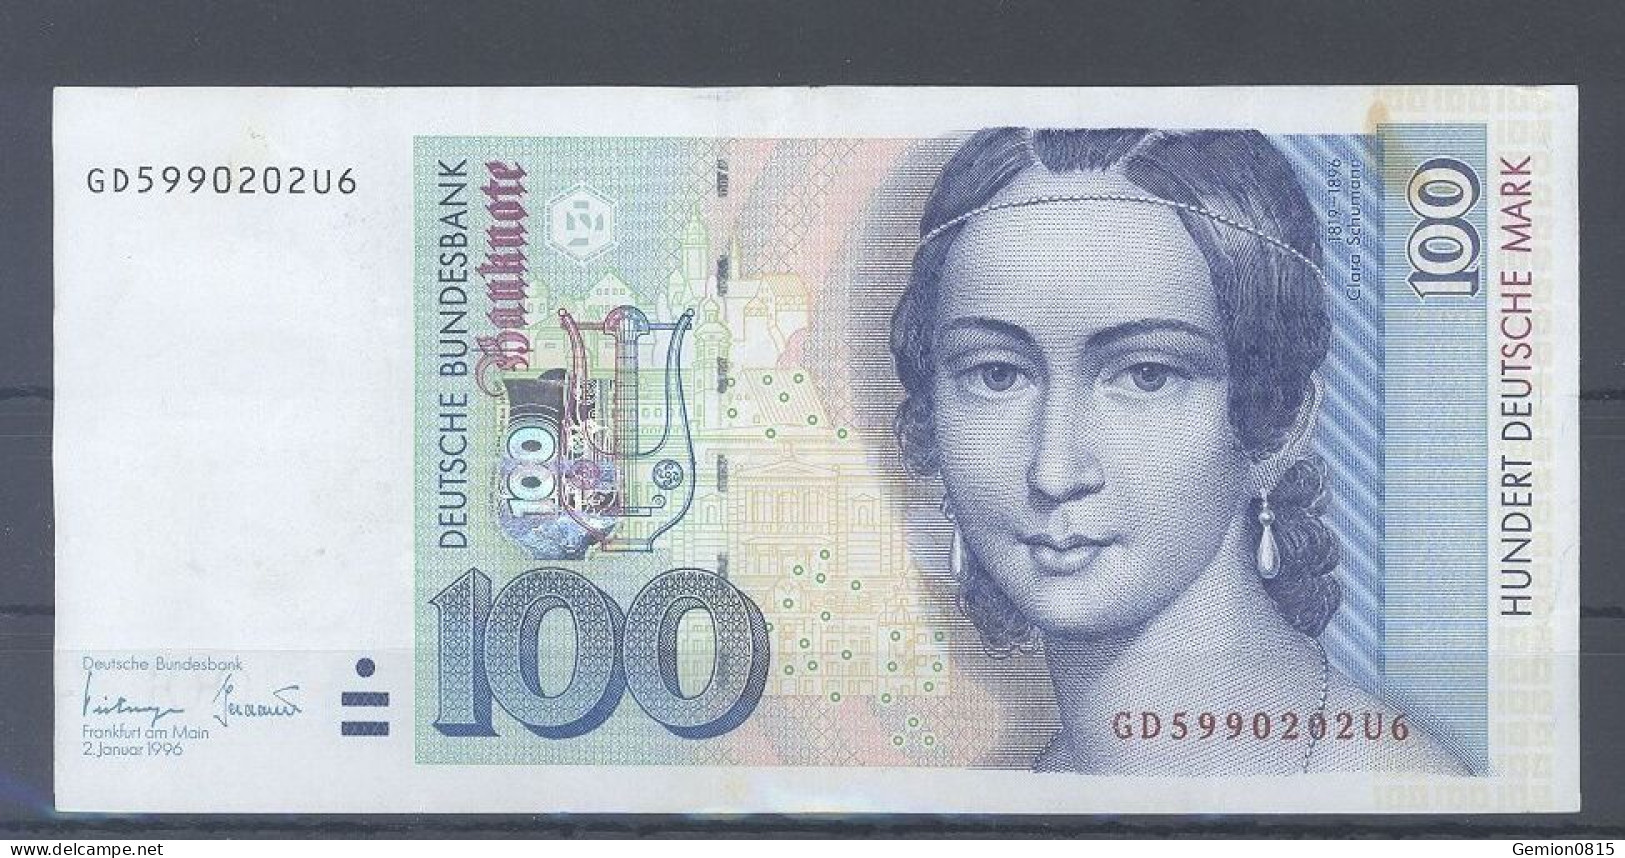 100 Deutsche Mark 1996 - 100 Deutsche Mark